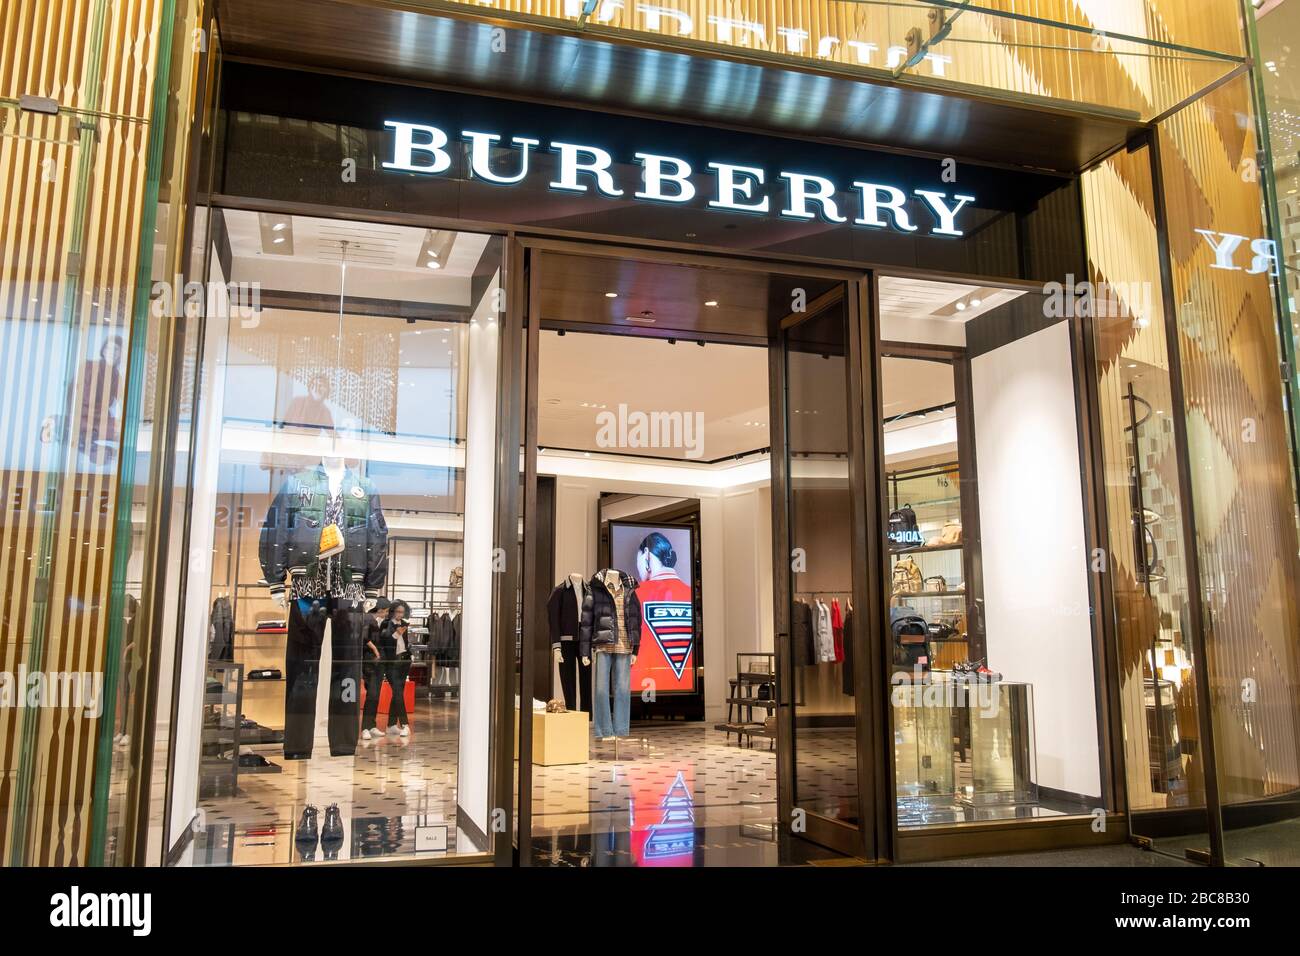 Burberry Store, un marchio commerciale di lusso britannico, logo esterno / segnaletica - Londra Foto Stock